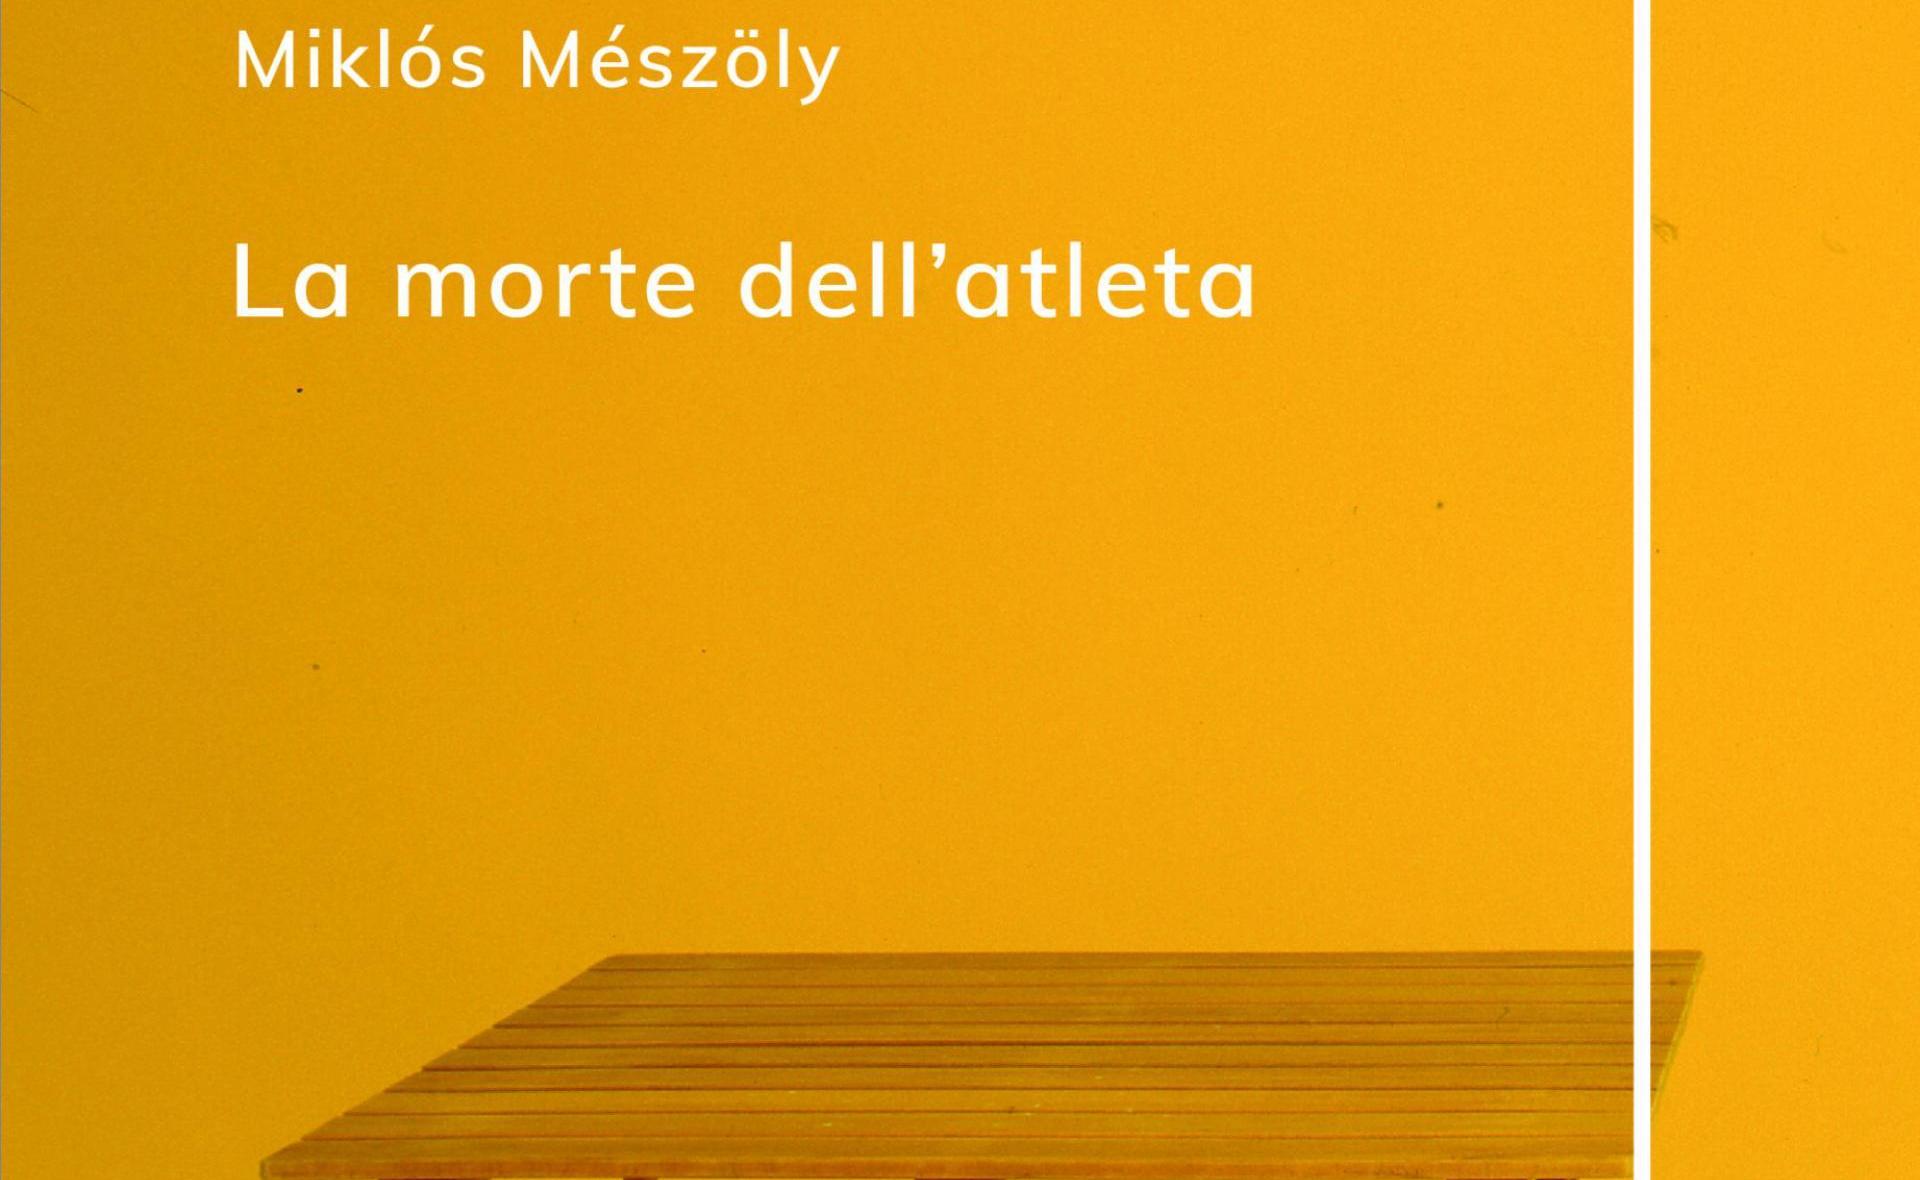 Omaggio a Miklós Mészöly al Salone Internazionale del Libro di Torino 